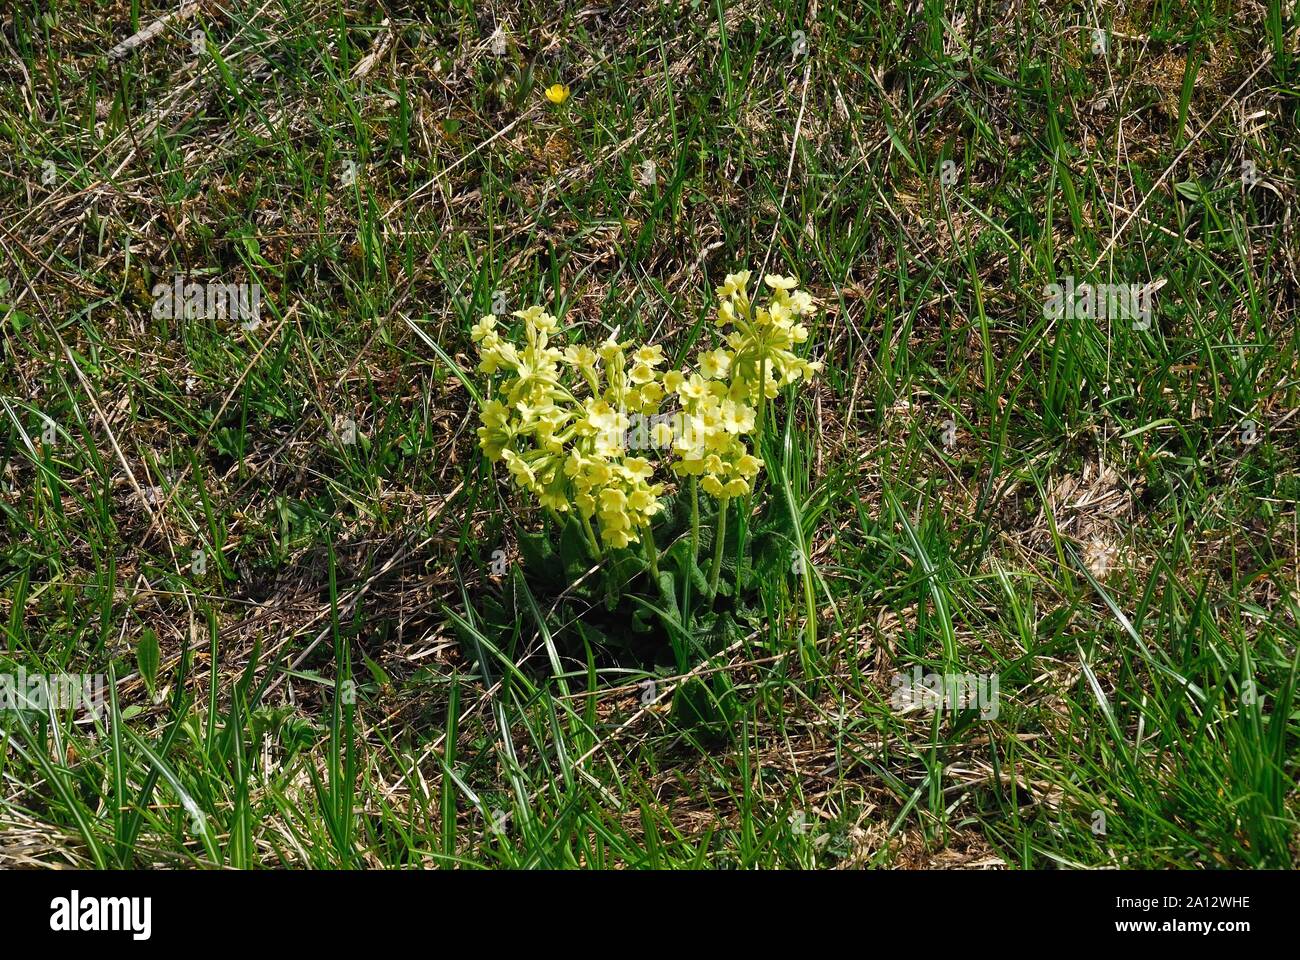 Veneto Pre-Alps,Italy. Dactylorhiza sambucina. Stock Photo